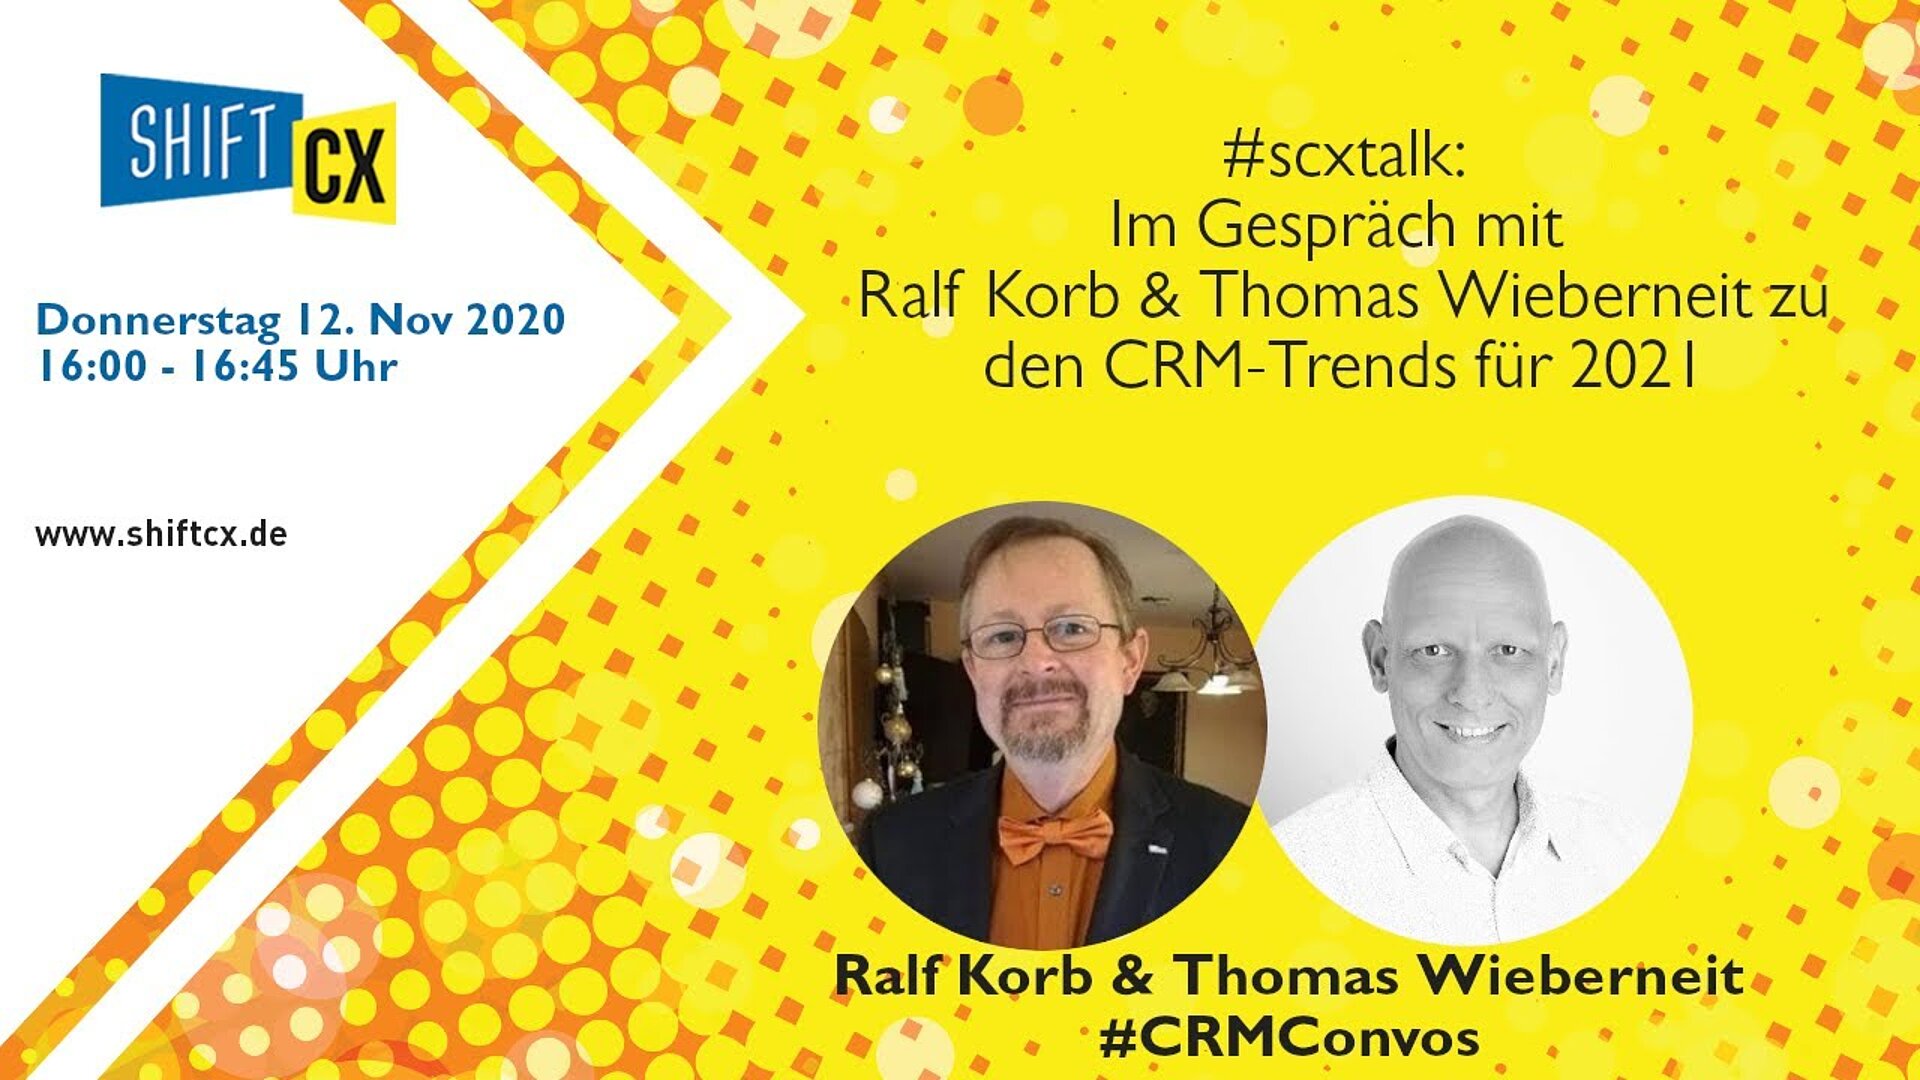 Im Gespräch mit Ralf Korb & Thomas Wieberneit zu den CRM-Trends für 2021